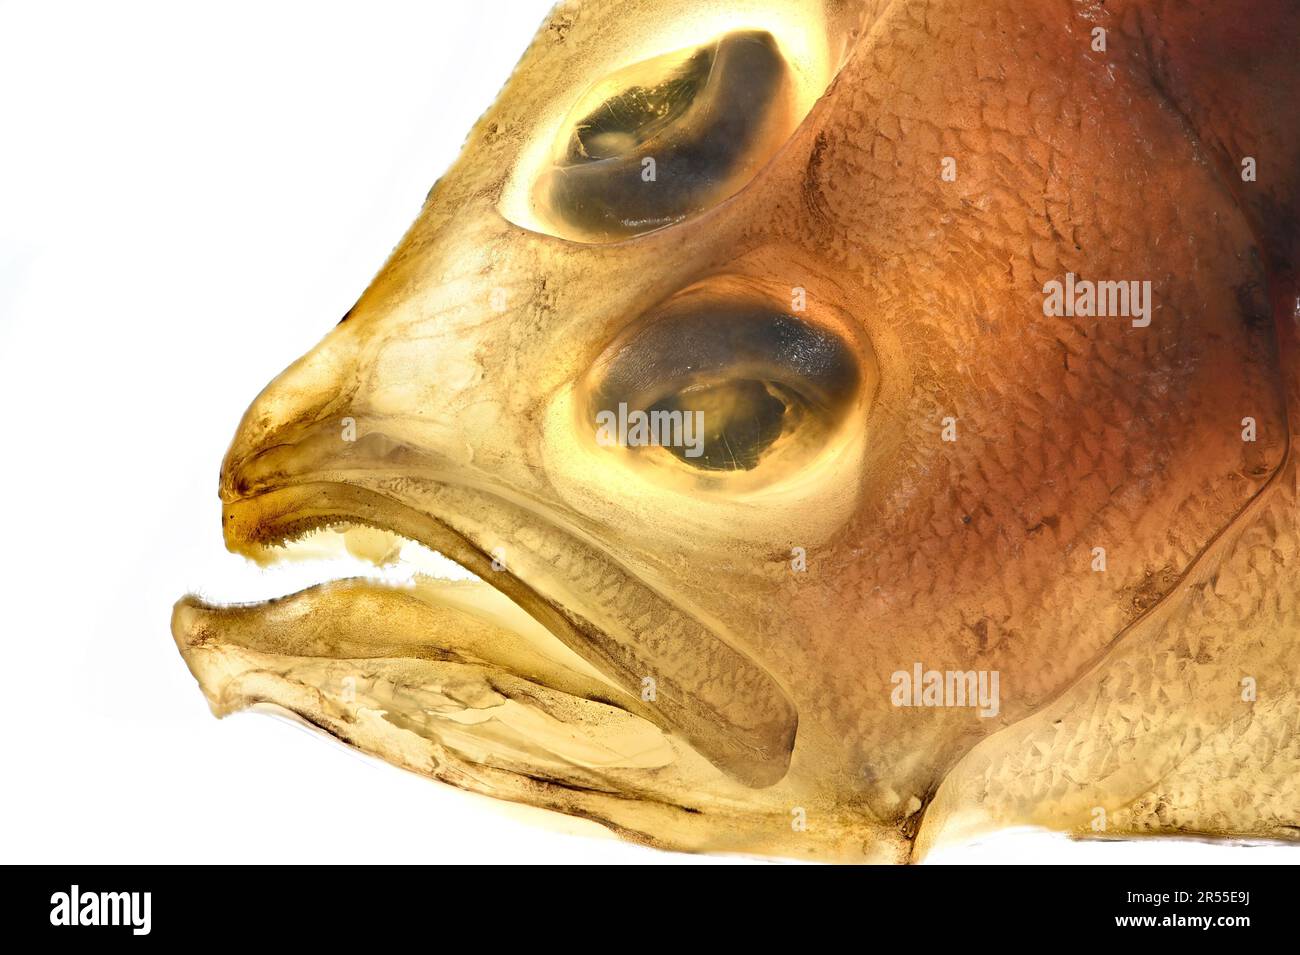 Megrim / Megrim Sole / Whiff / Cornish Sole (Lepidorhombus whiffiagonis) left-eyed flatfish -lit from behind Stock Photo